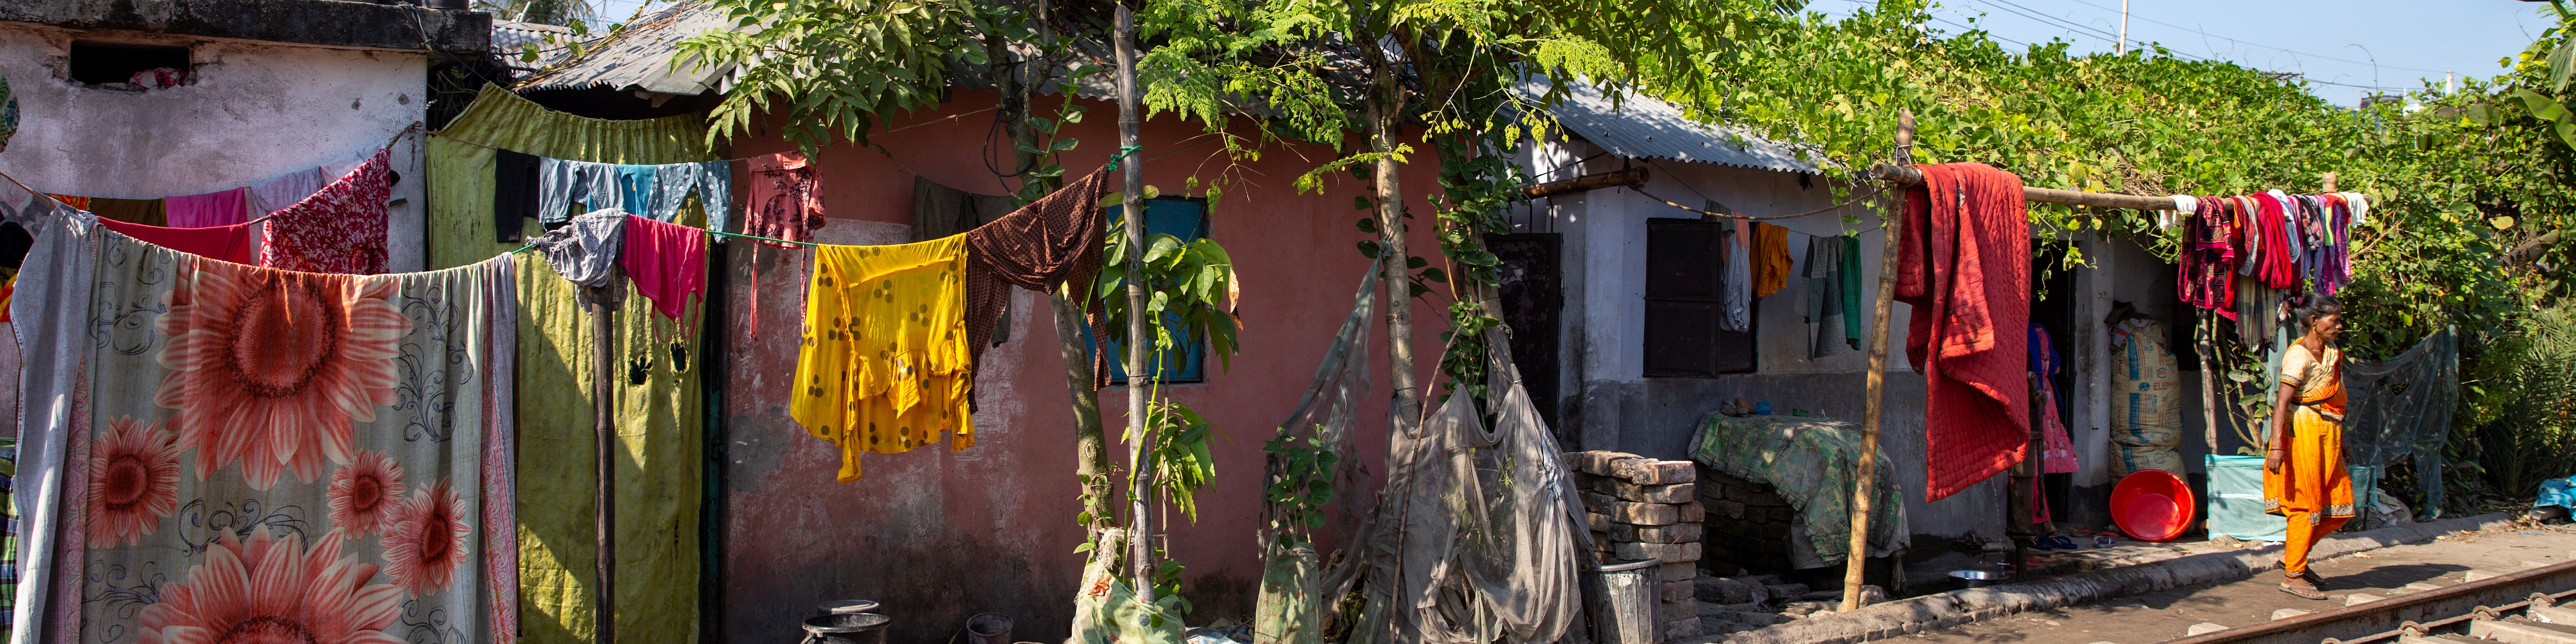 Bunte Stoffe hängen vor einem Wohnhaus. ©GIZ/Aneek Anwar